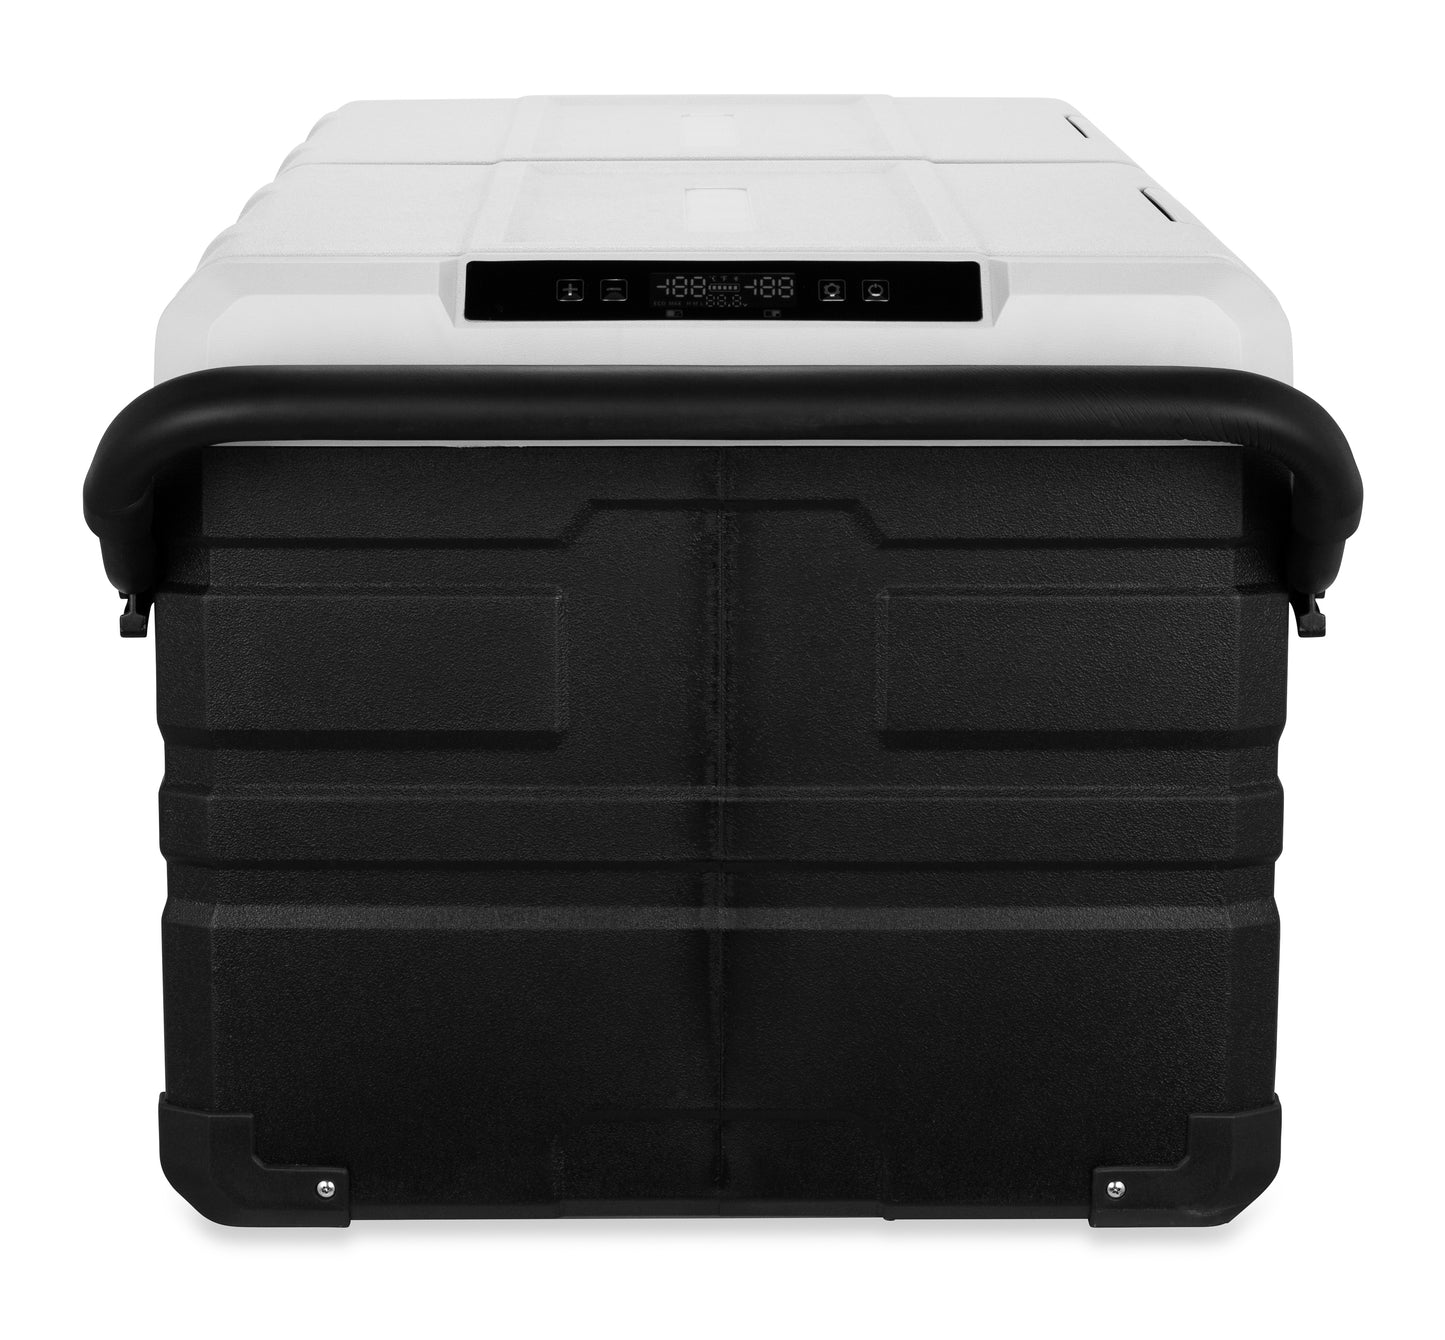 Camco Outdoors CAM-950 Portable Refrigerator / Freezer - 95 Liter